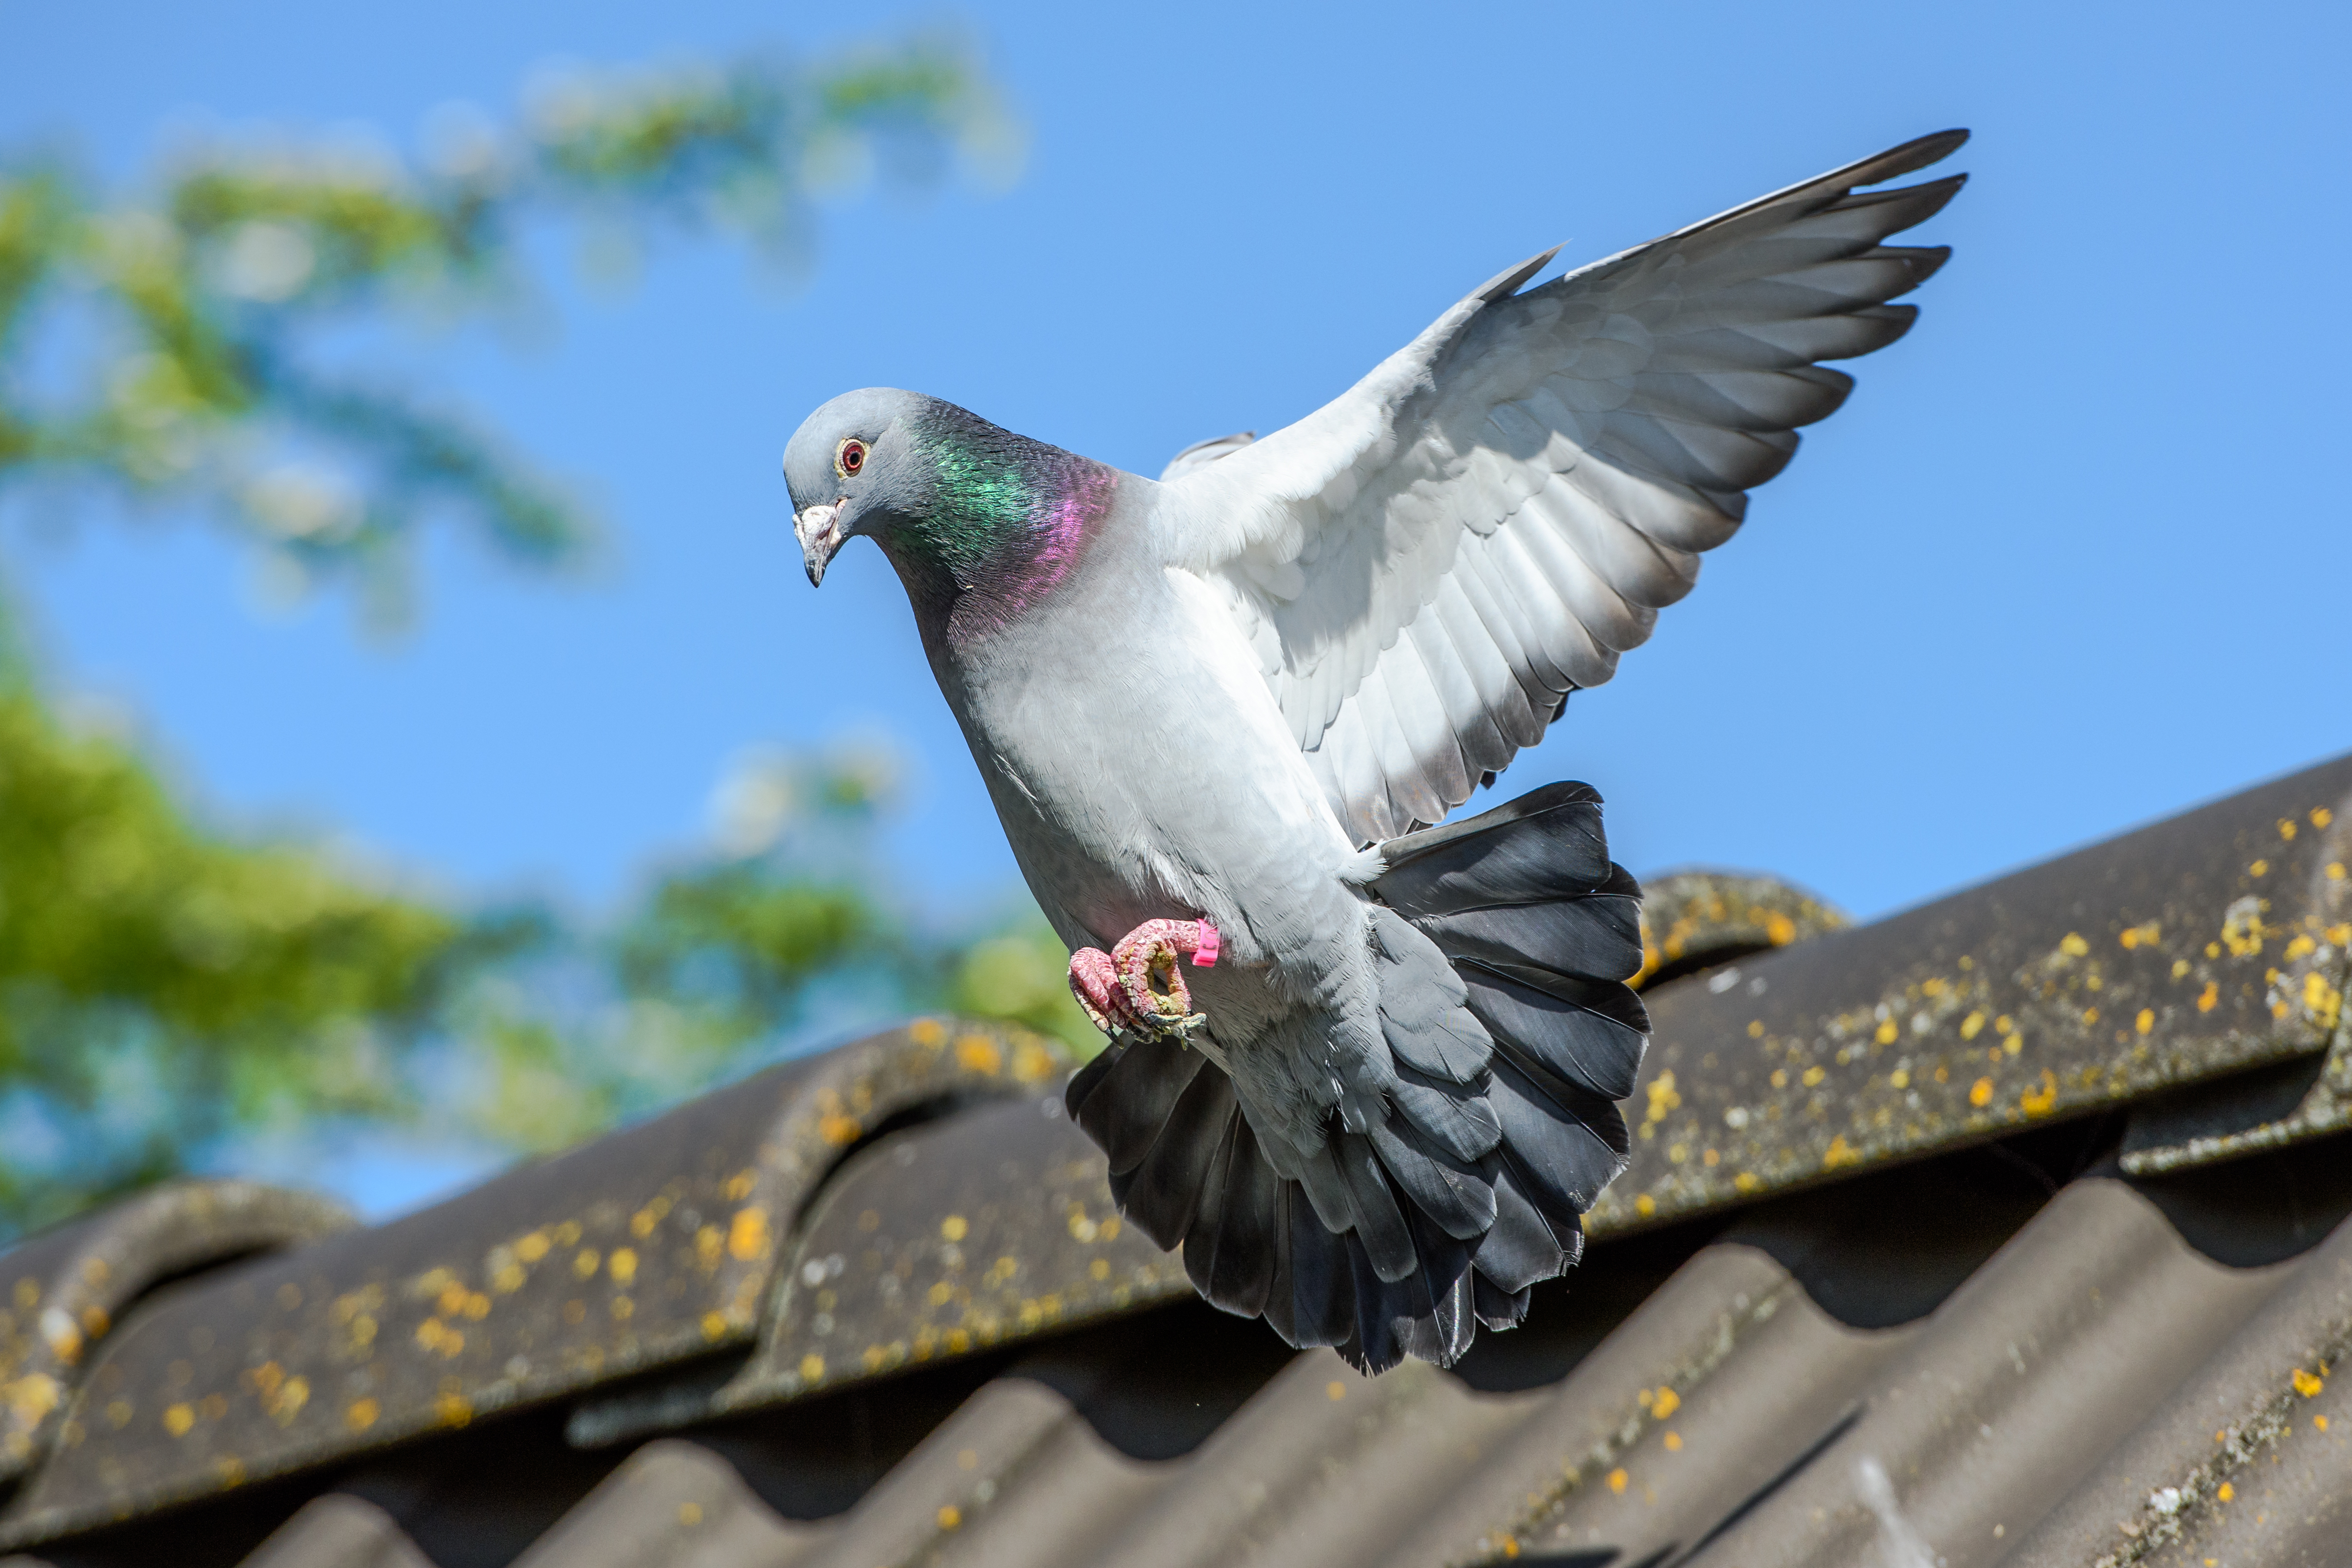 Ce s-a întâmplat cu porumbelul care trebuia să fie eutanasiat, pentru că a „încălcat restricțiile impuse din cauza pandemiei”